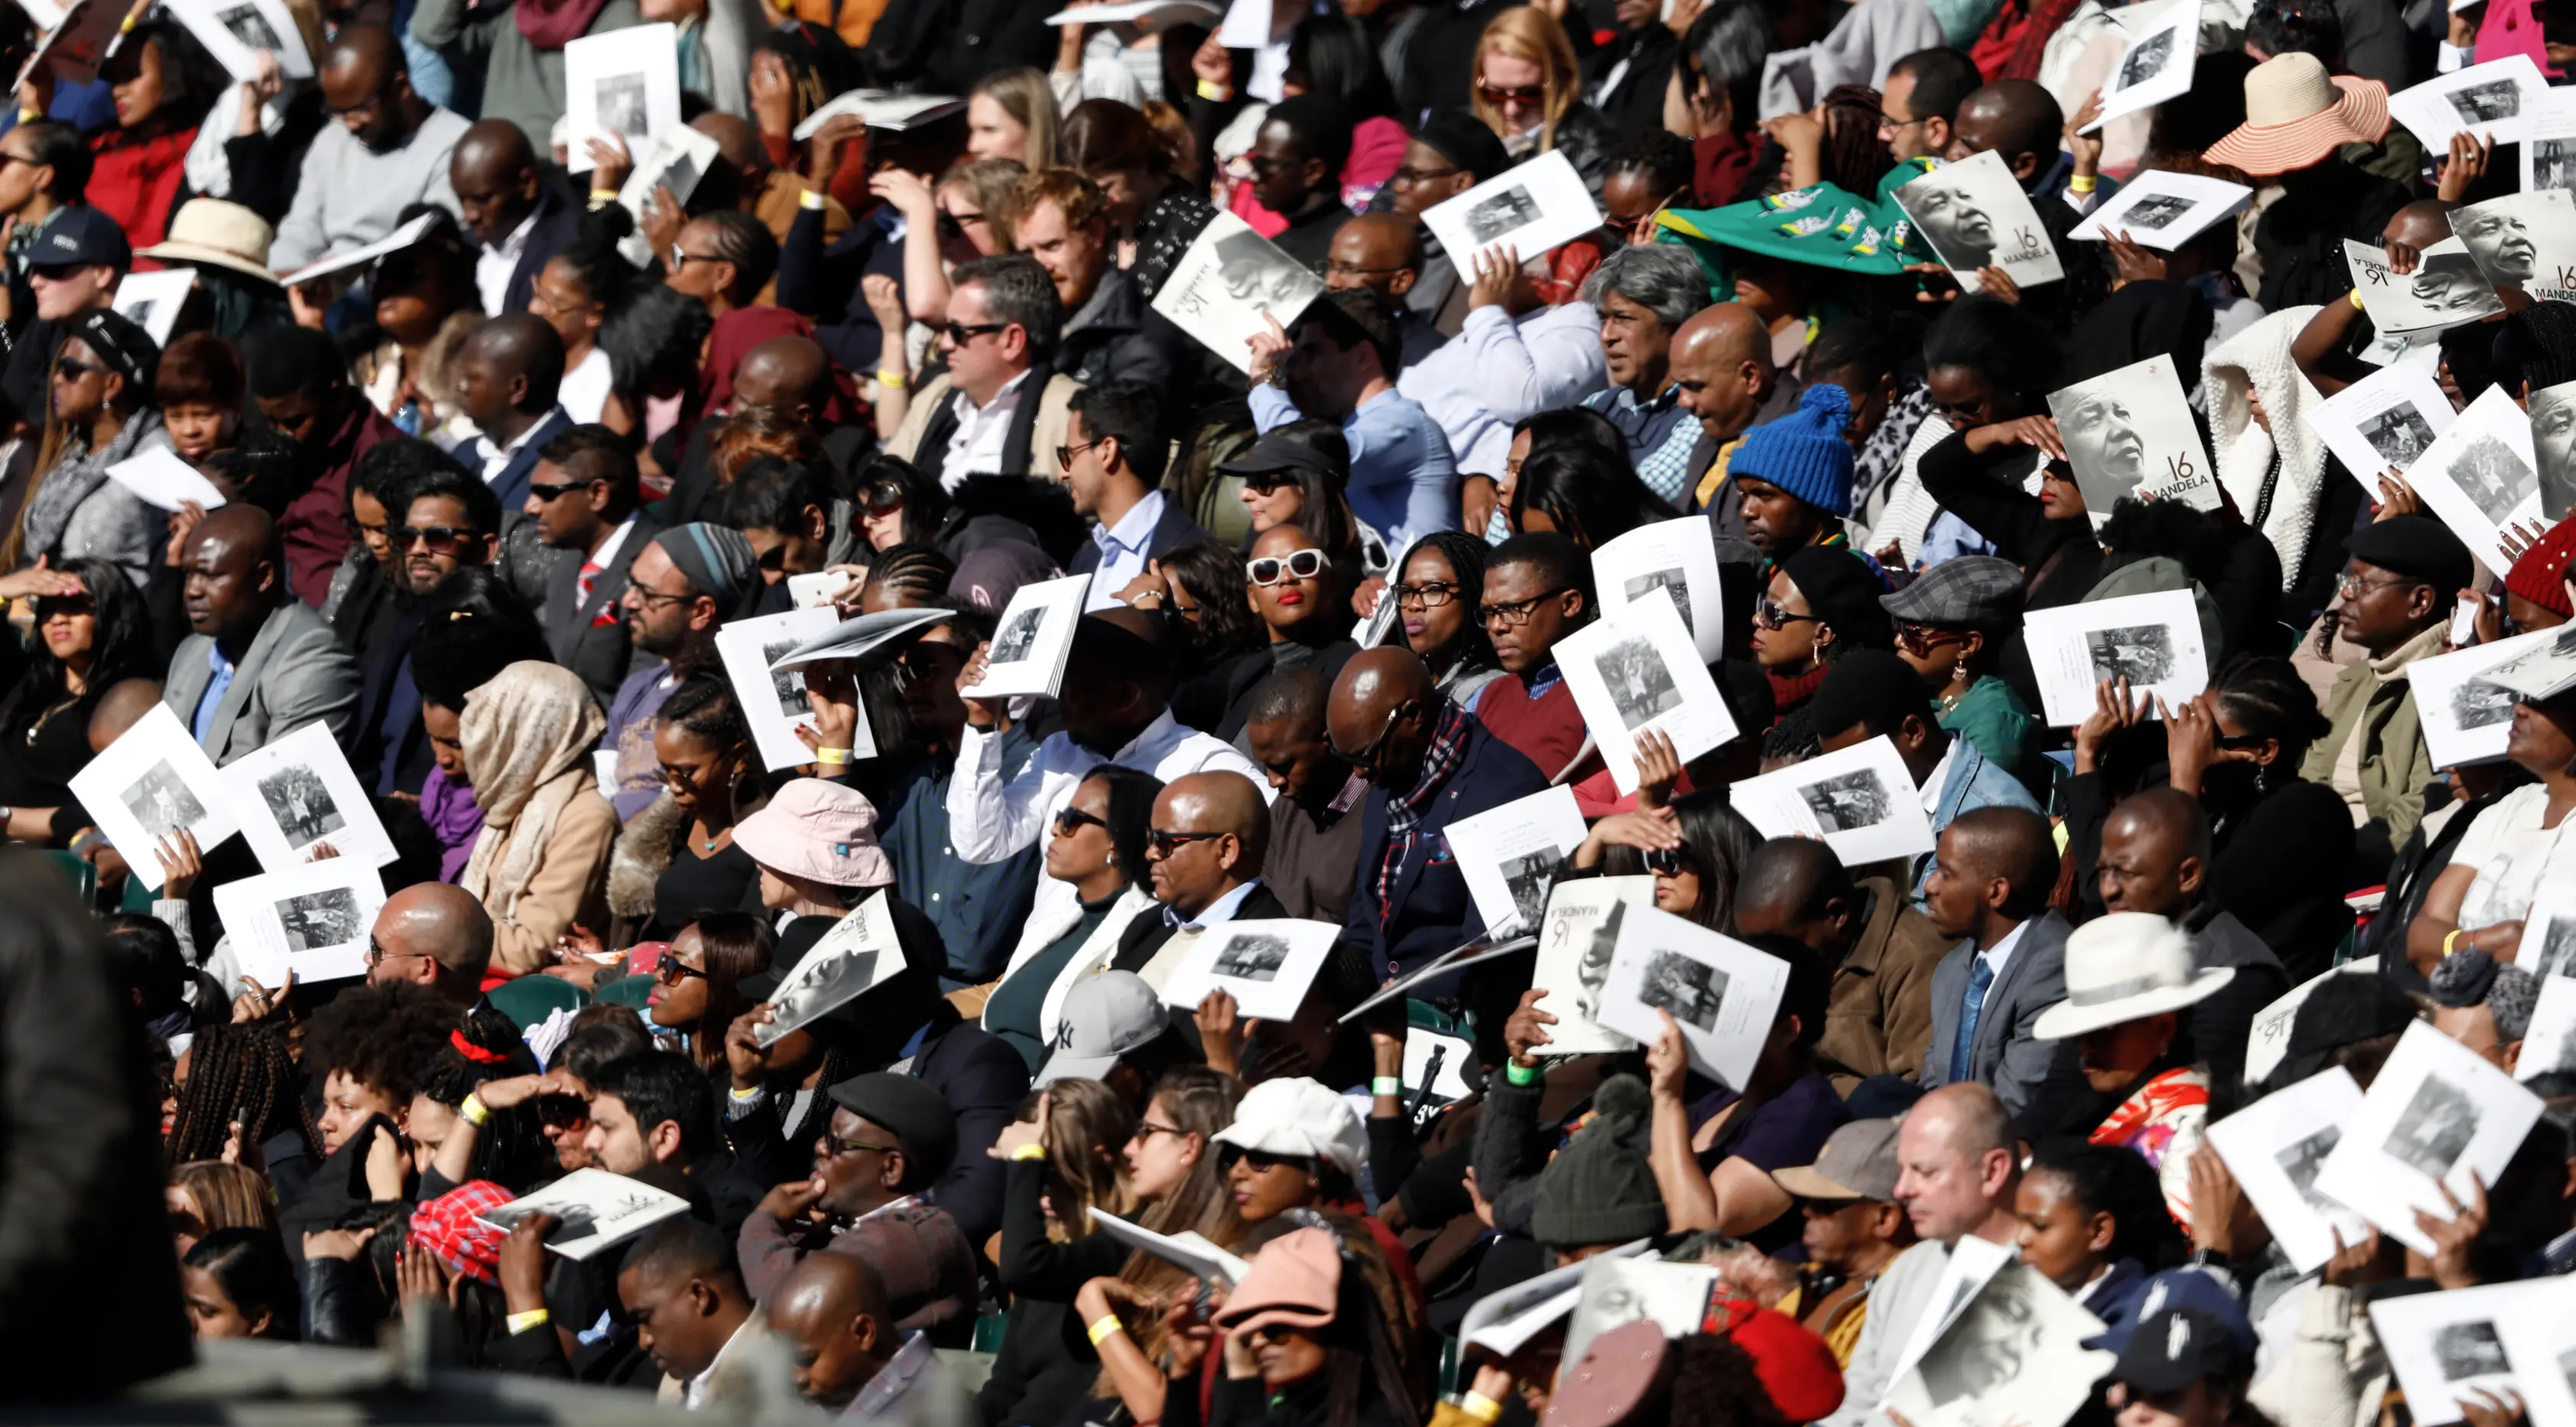 Penonton mendengarkan mantan presiden AS Barack Obama berbicara dalam Kuliah Tahunan Nelson Mandela ke-16 di Wanderers Stadium, Johannesburg, Afrika Selatan, Selasa (17/7). Nelson Mandela dikenal sebagai tokoh antiapartheid. (GIANLUIGI GUERCIA/AFP)